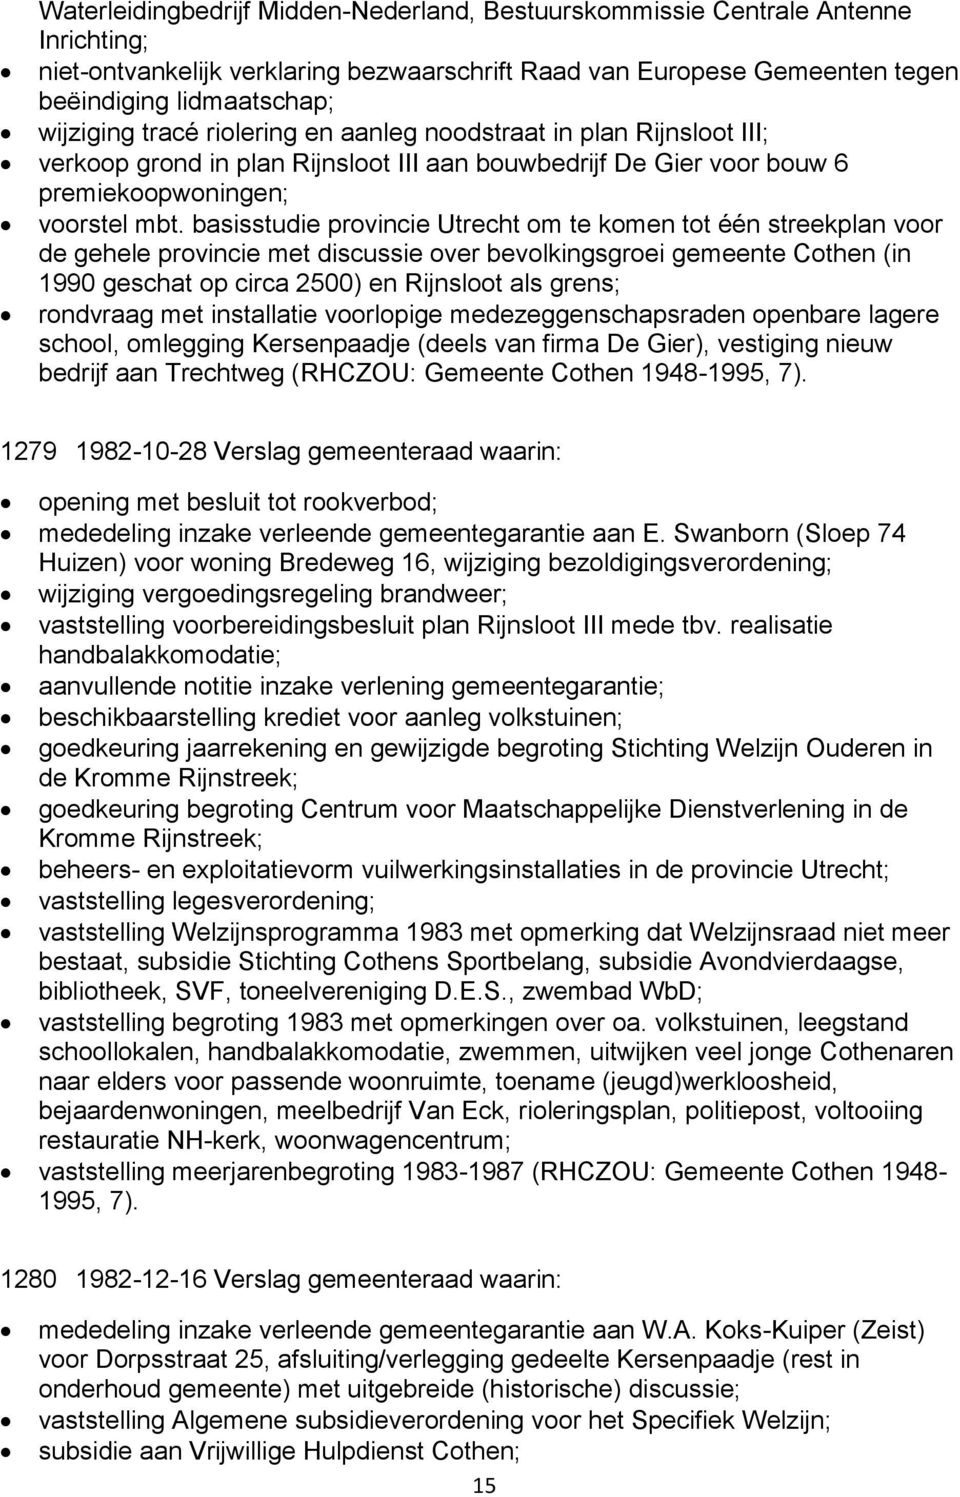 basisstudie provincie Utrecht om te komen tot één streekplan voor de gehele provincie met discussie over bevolkingsgroei gemeente Cothen (in 1990 geschat op circa 2500) en Rijnsloot als grens;